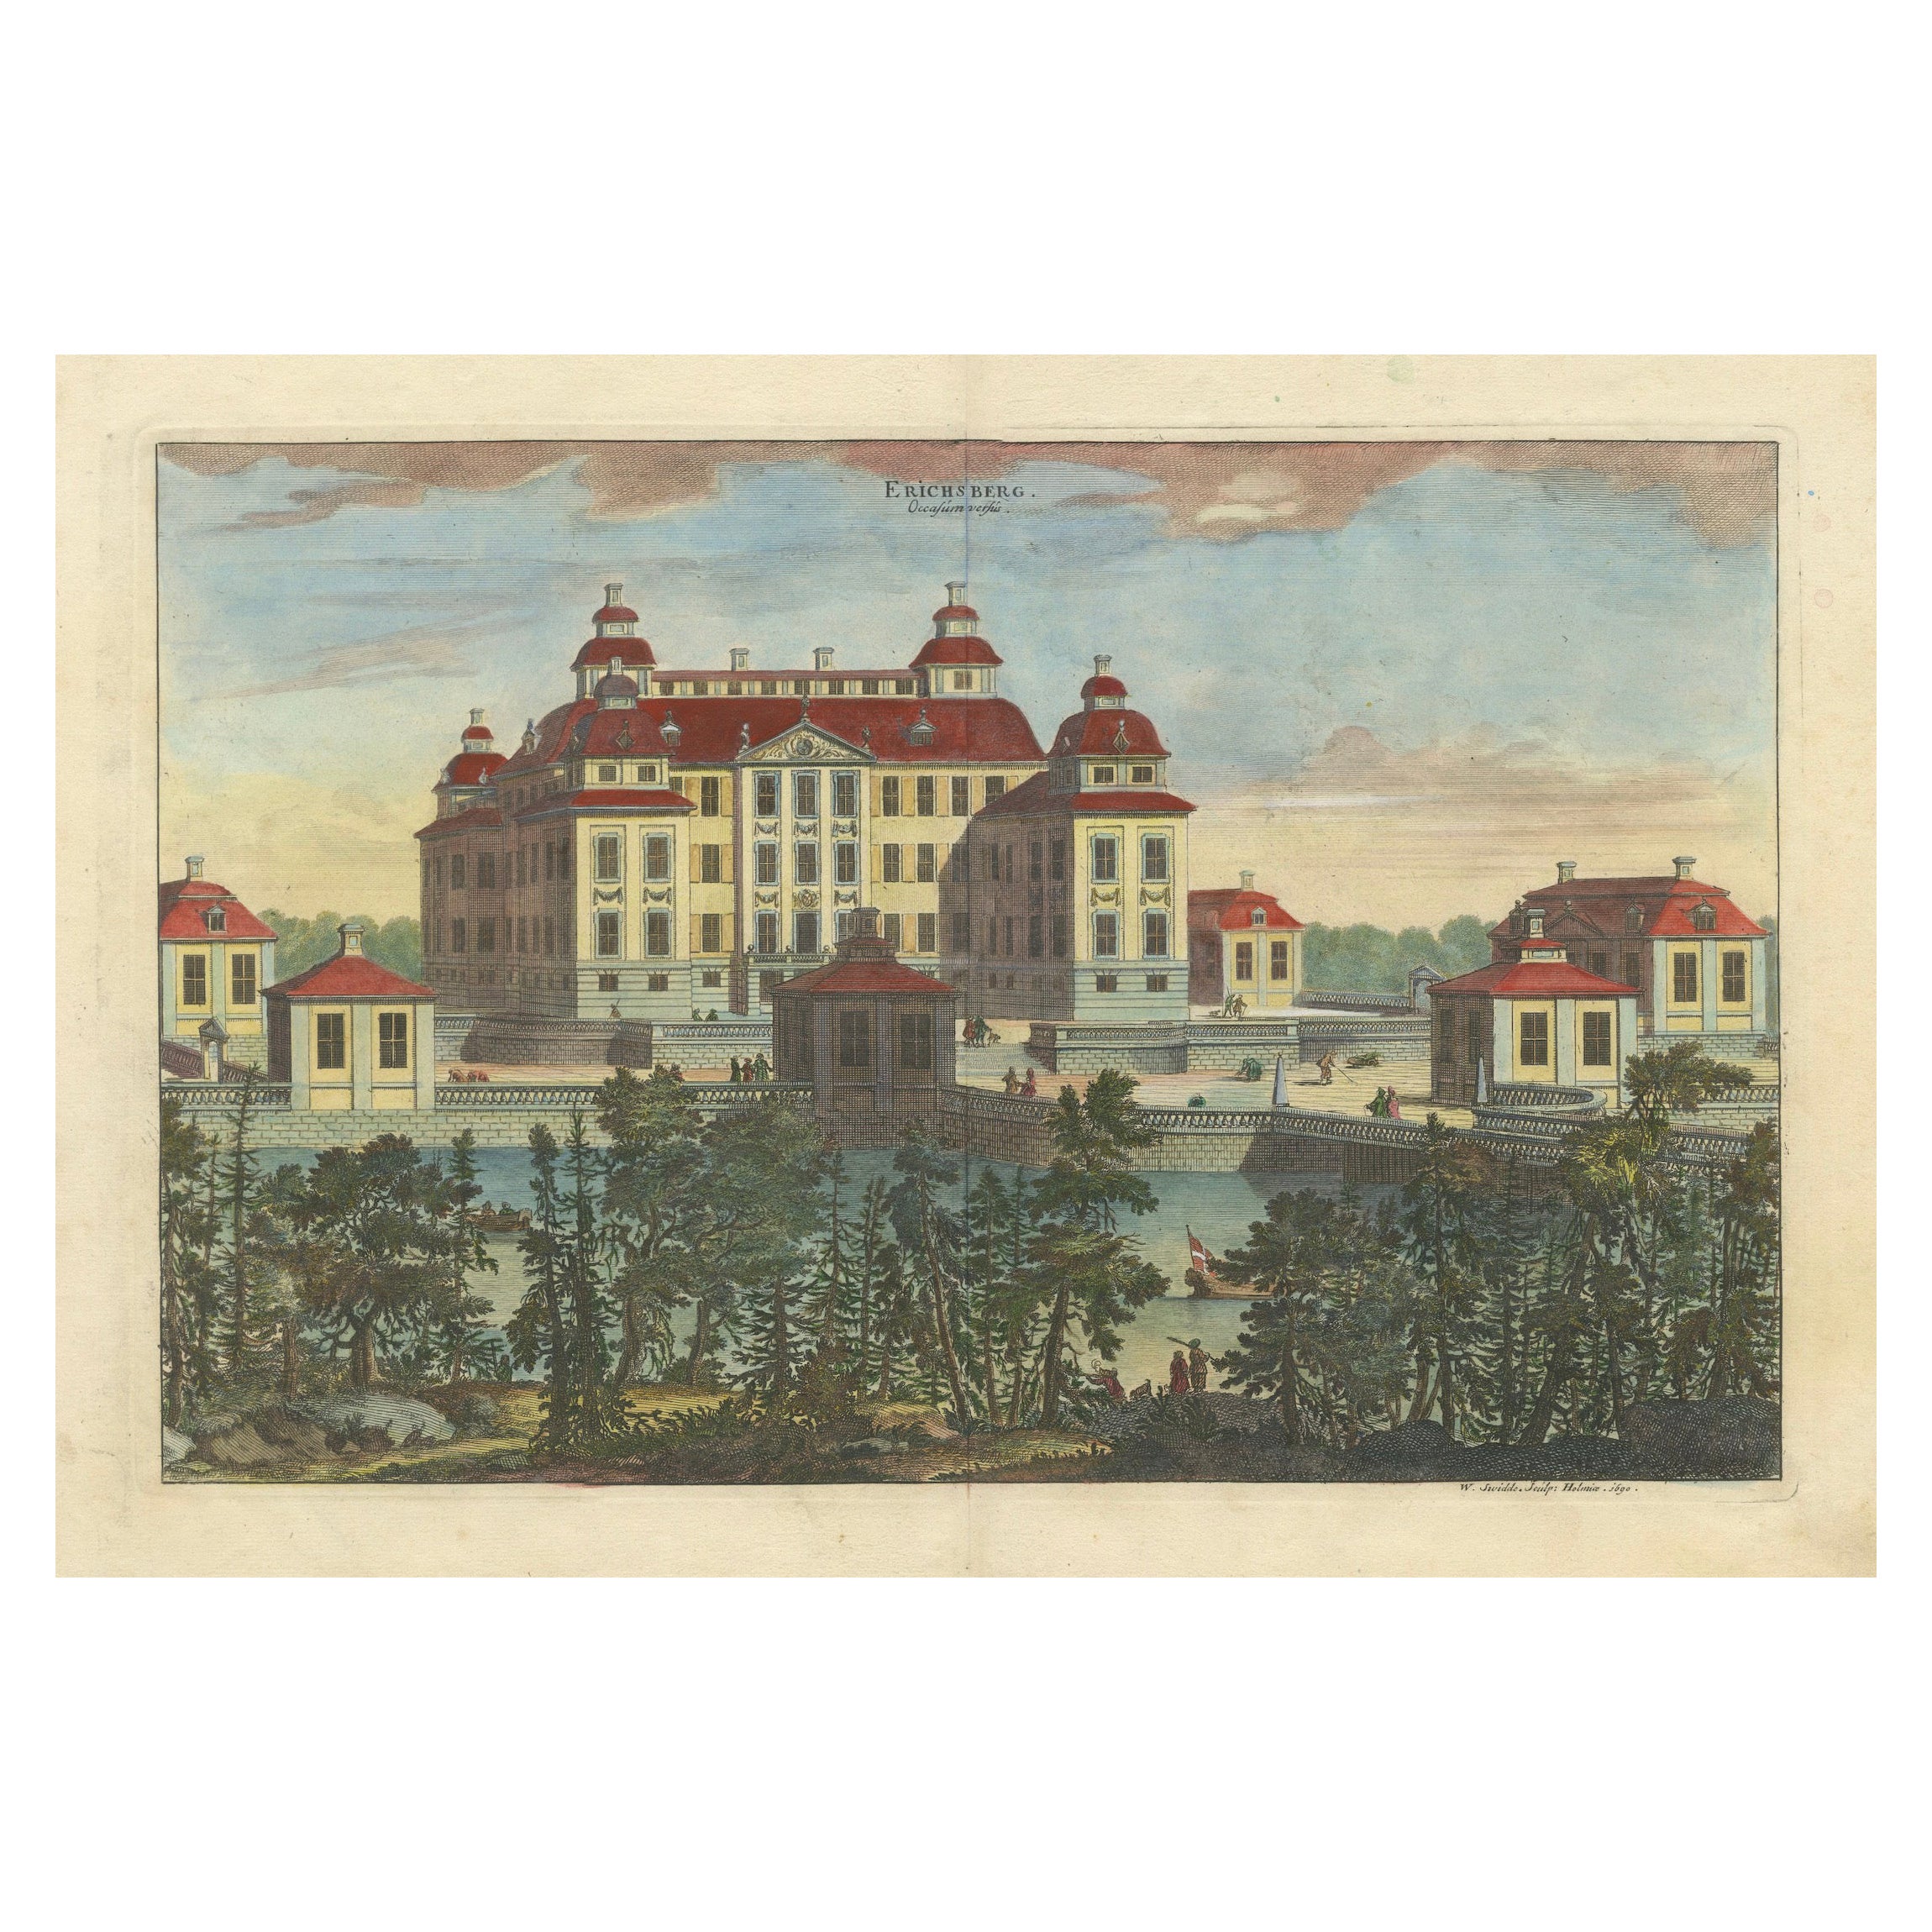 Splendor baroque : château d'Ericsberg dans la Suecia Antiqua et Hodierna de Swidde's, 1690